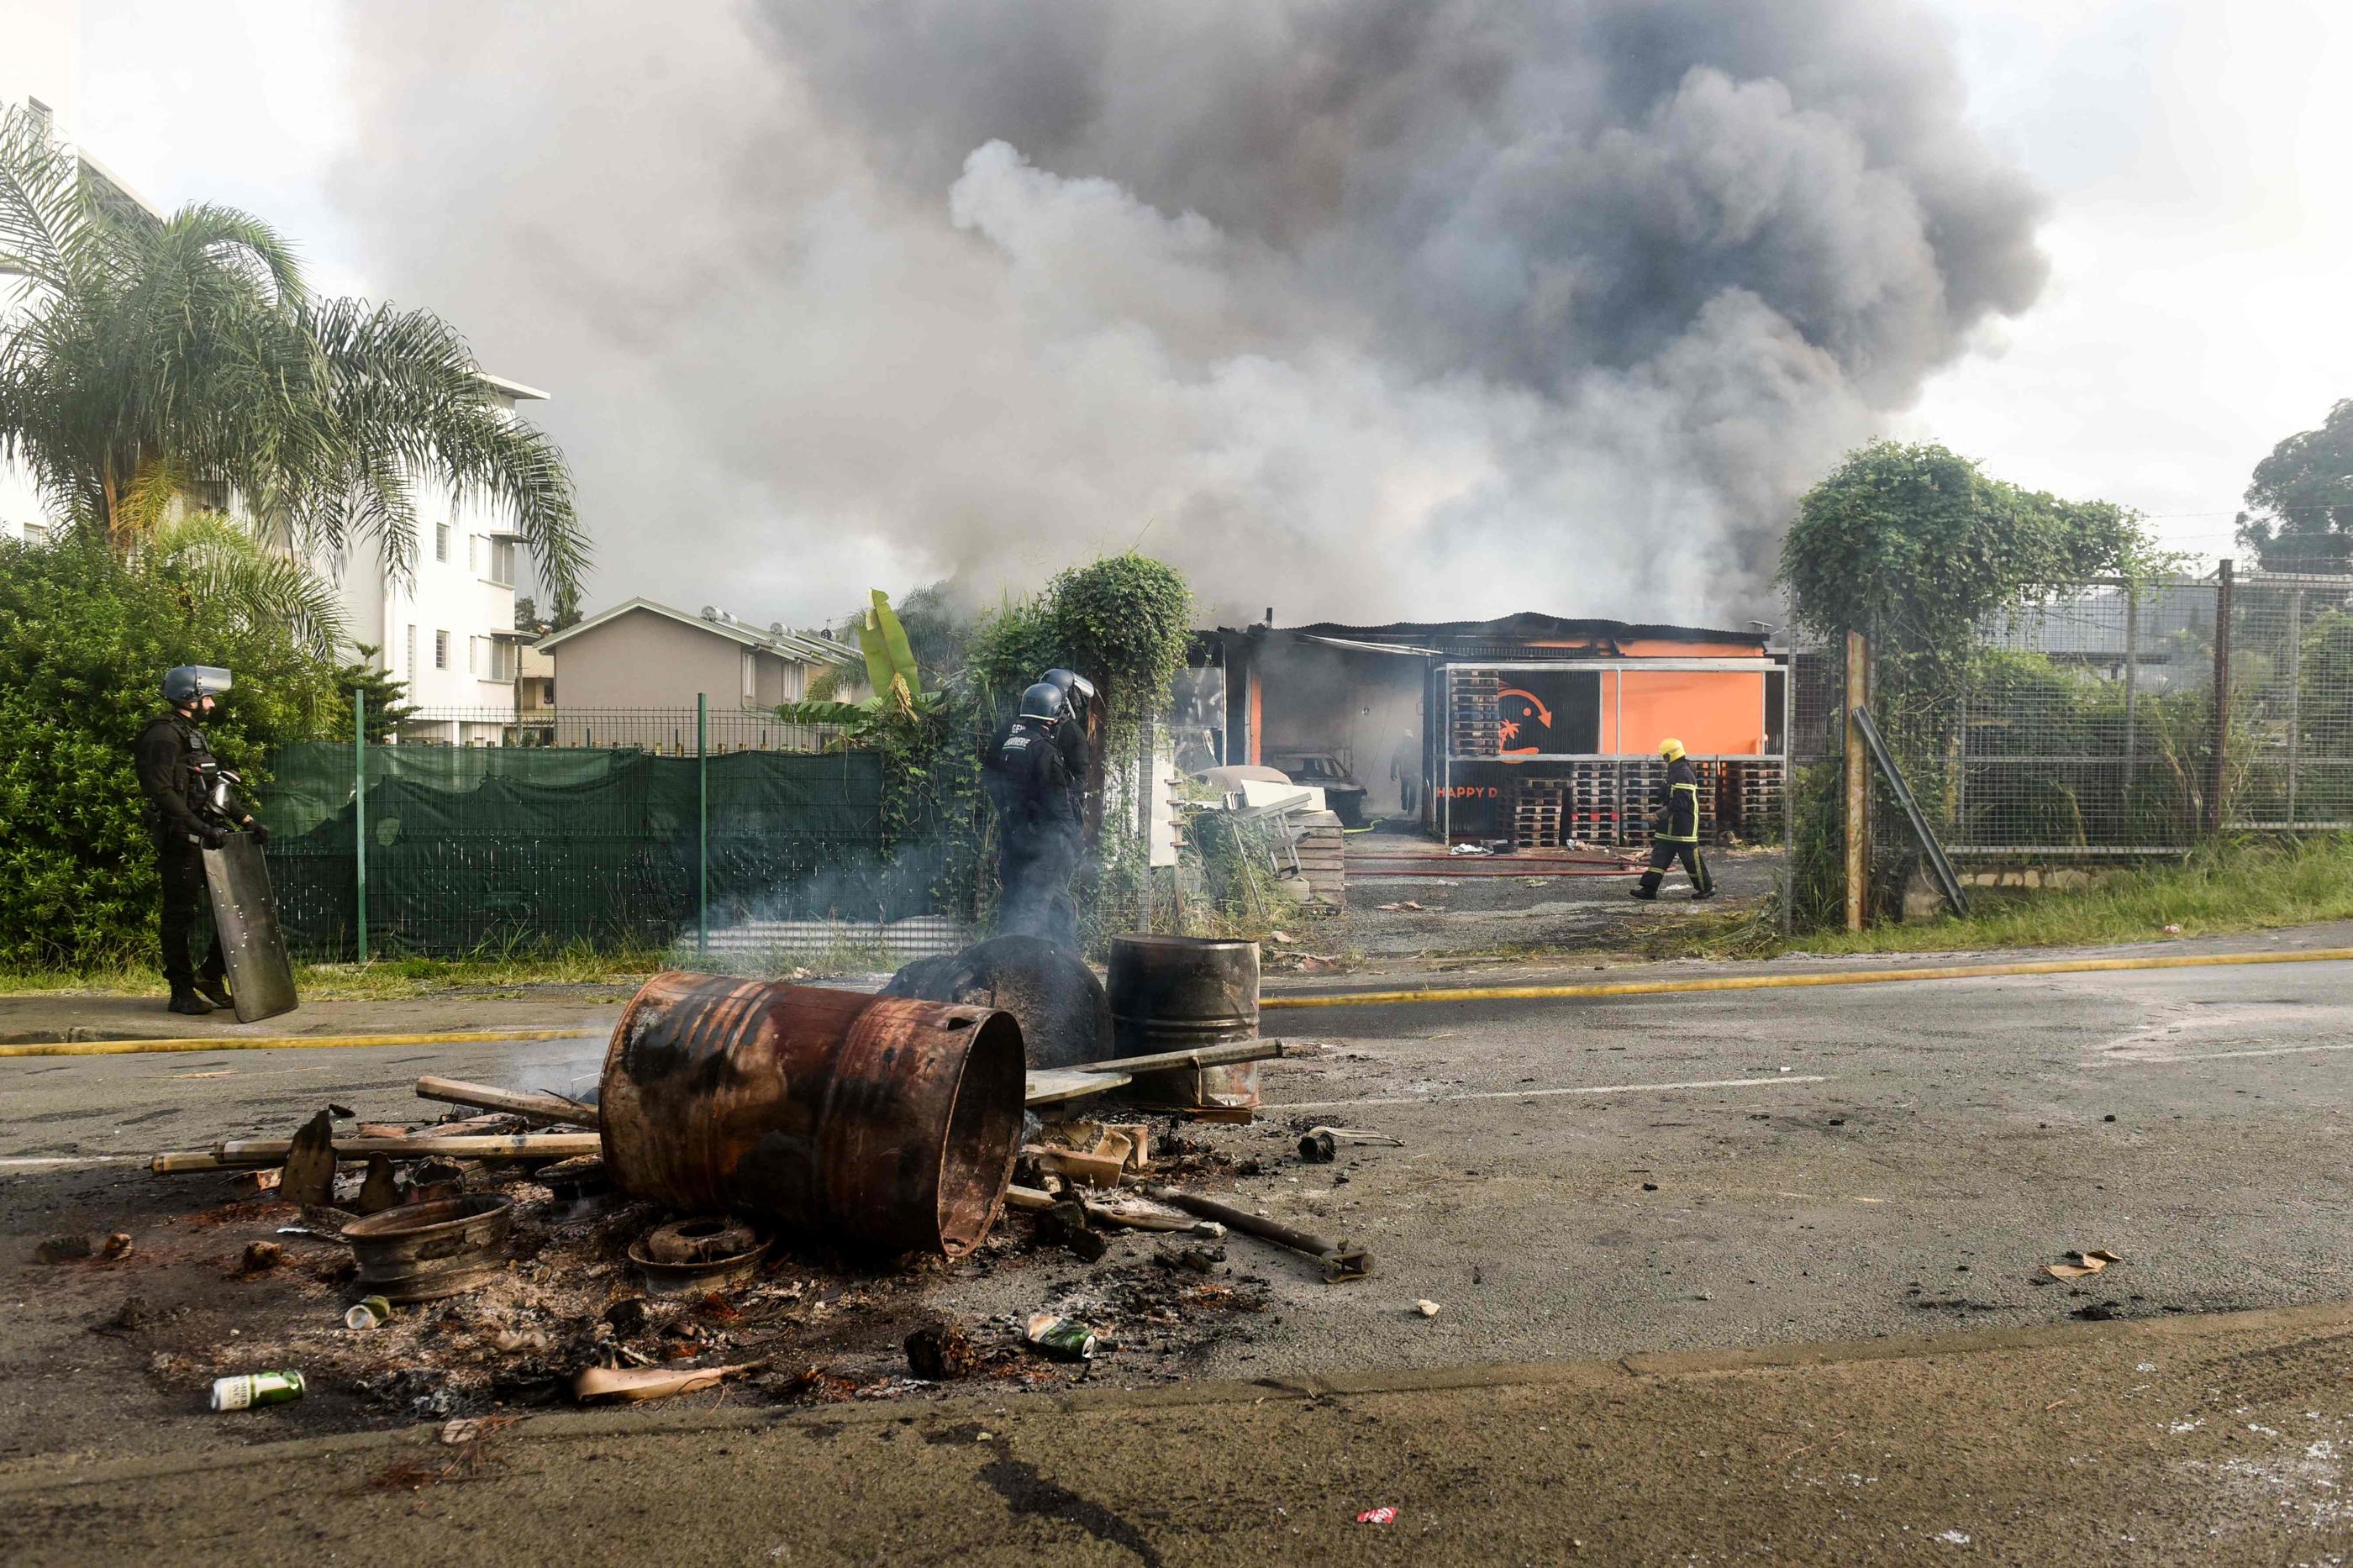 Les obstacles enflammés disposés sur les routes du Grand Nouméa pour entraver l'action des forces de l'ordre compliquent aussi les interventions des sapeurs-pompiers. AFP/Mathurin Derel